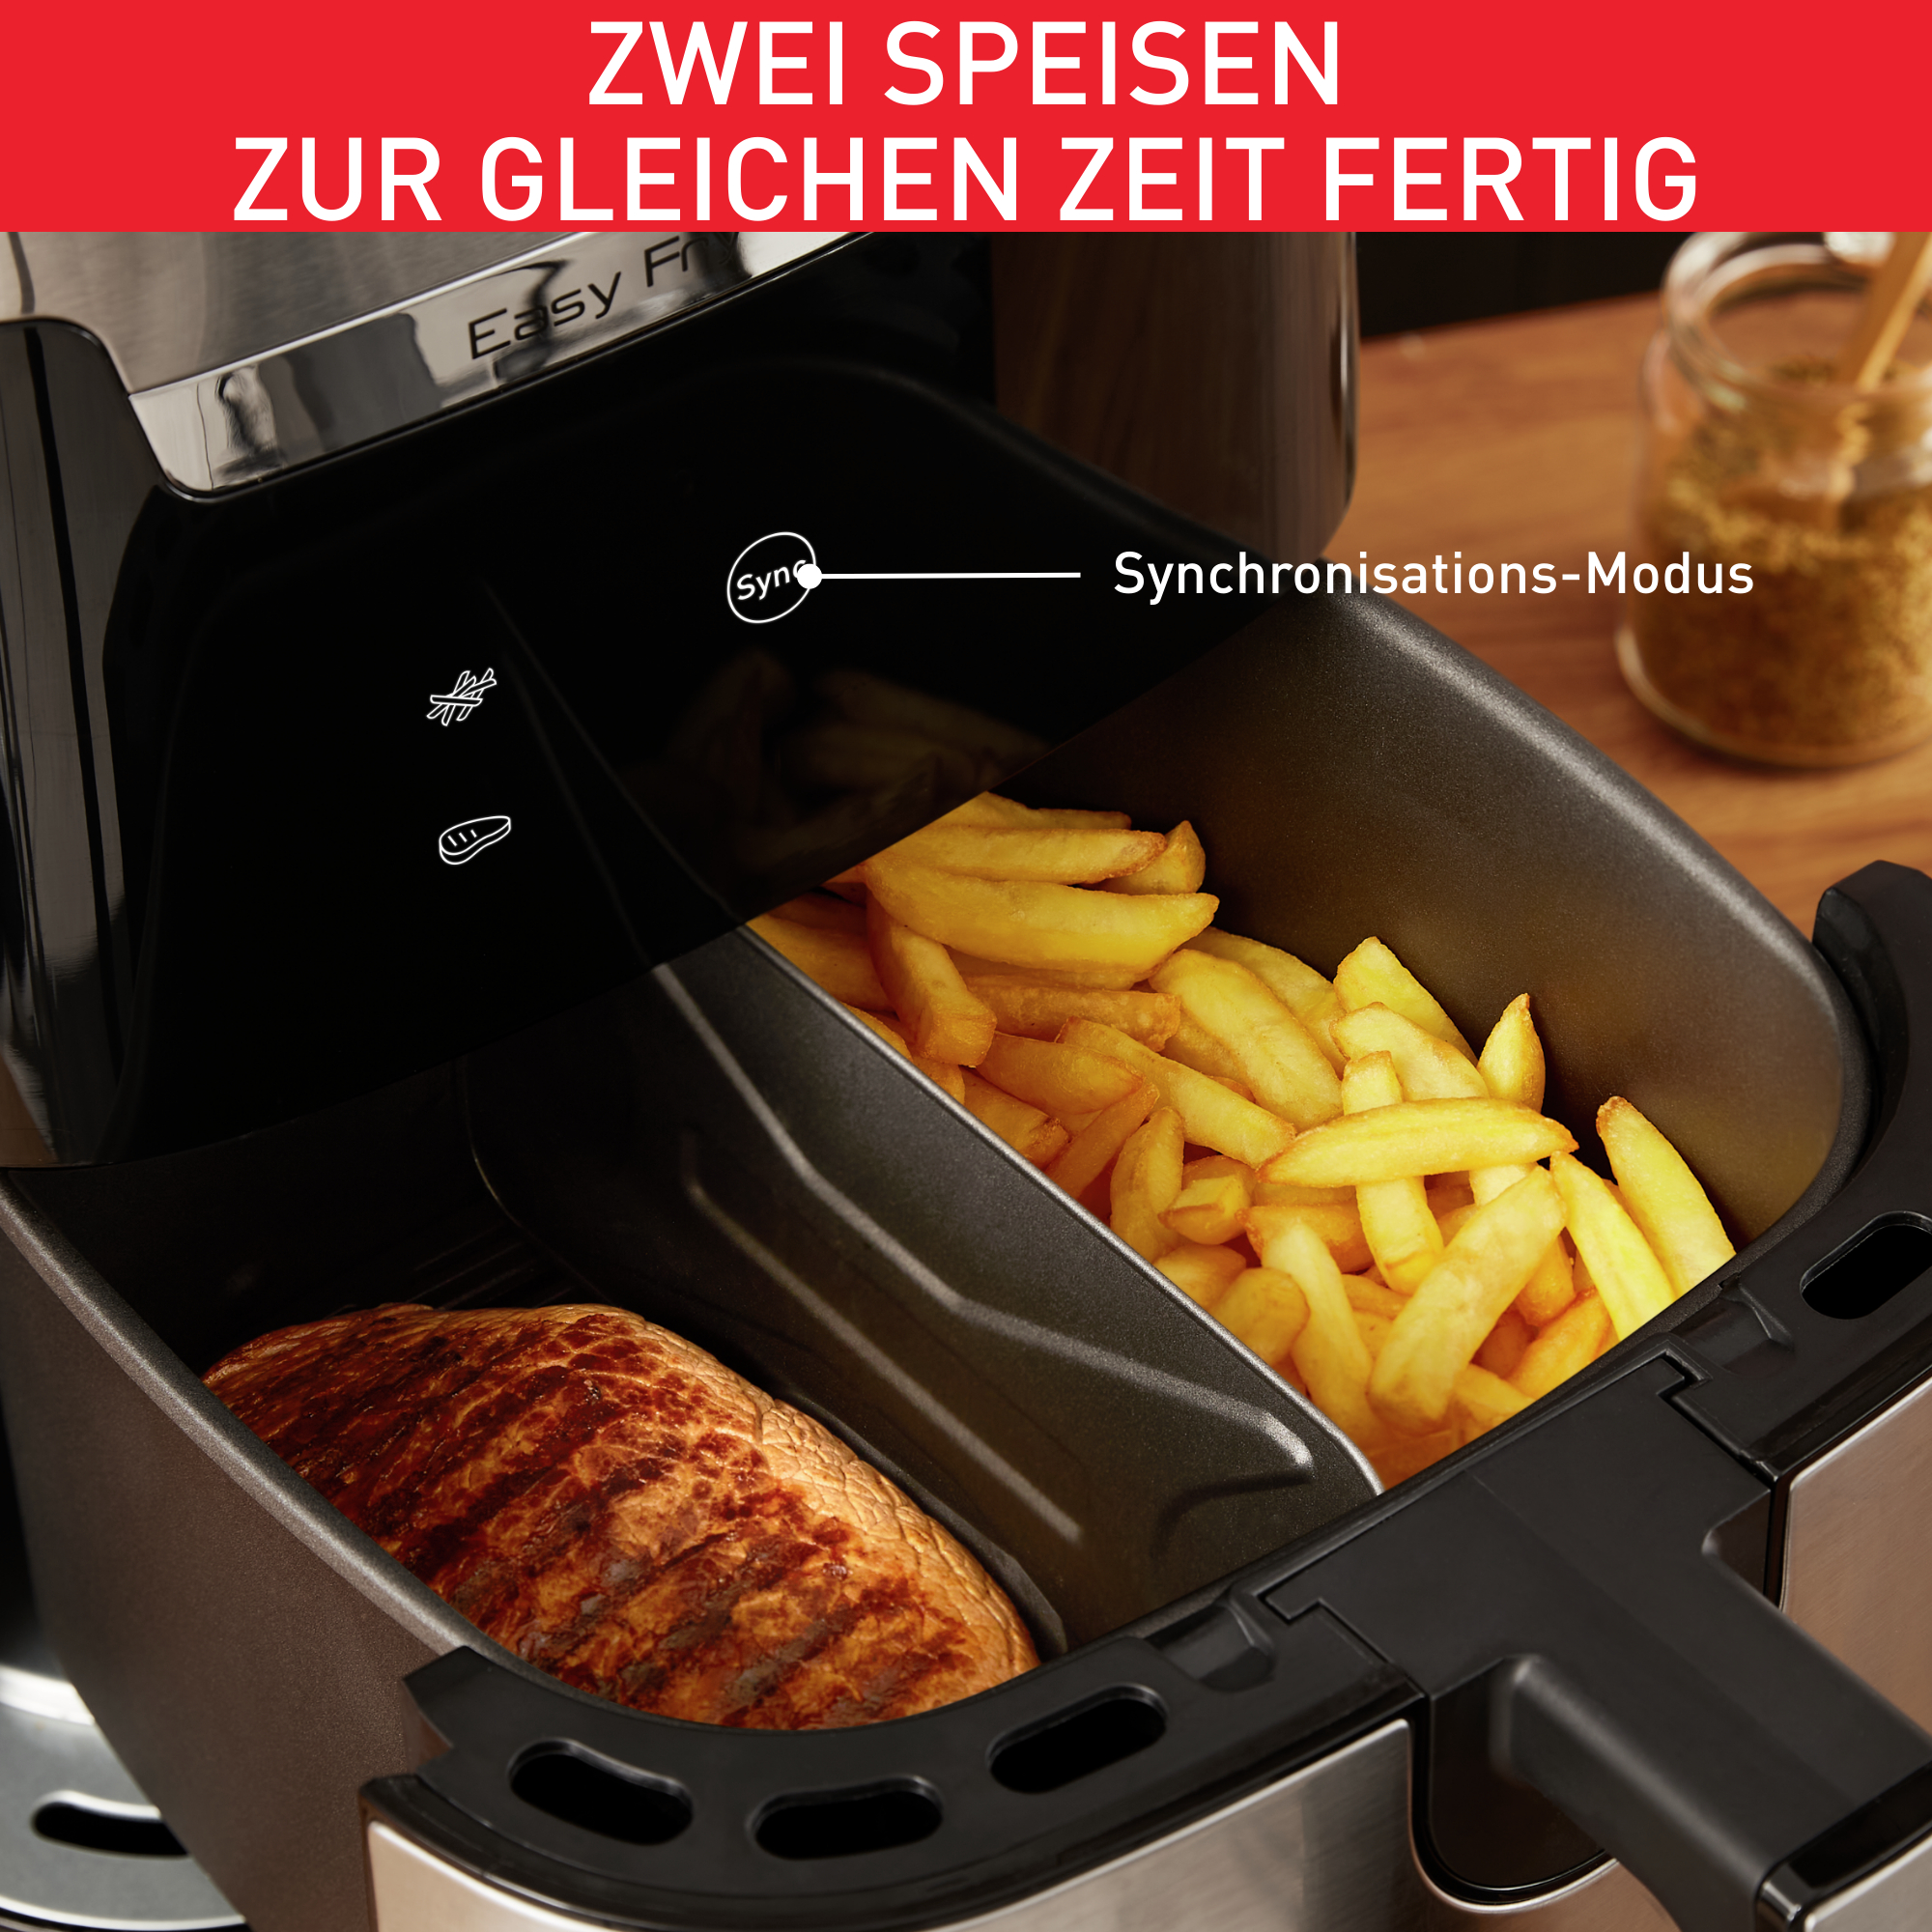 Edelstahl/Schwarz Grill TEFAL Flexcook EY801D XXL 1700 Easy Watt & Fry Heißluftfritteuse/Grill